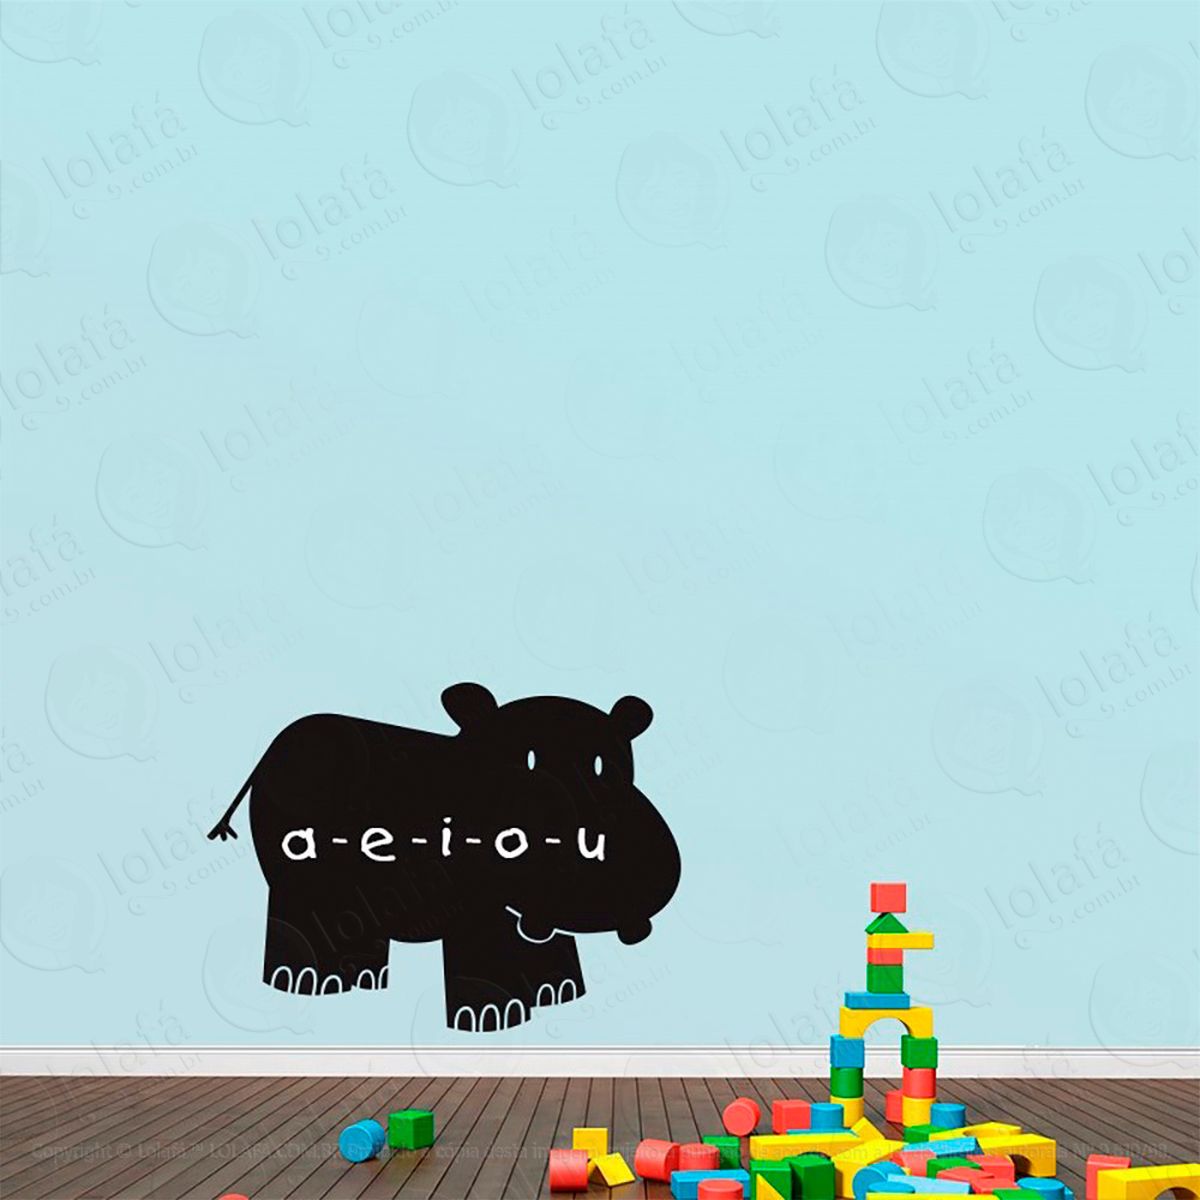 hipopótamo adesivo lousa quadro negro de parede para escrever com giz - mod:69